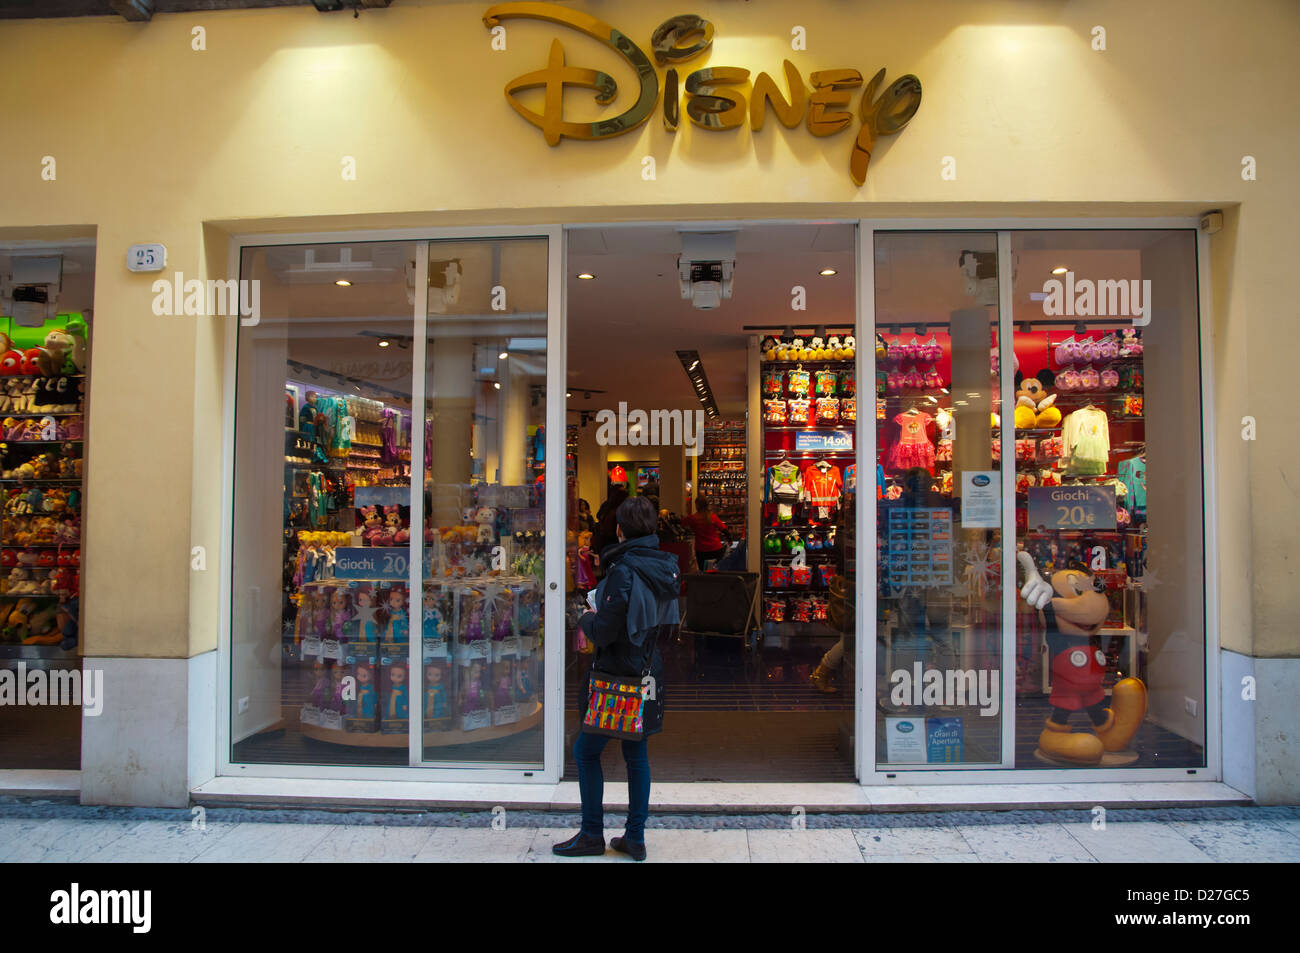 Disney store along via Mazzini street Verona city the Veneto region northern Italy Europe Stock Photo